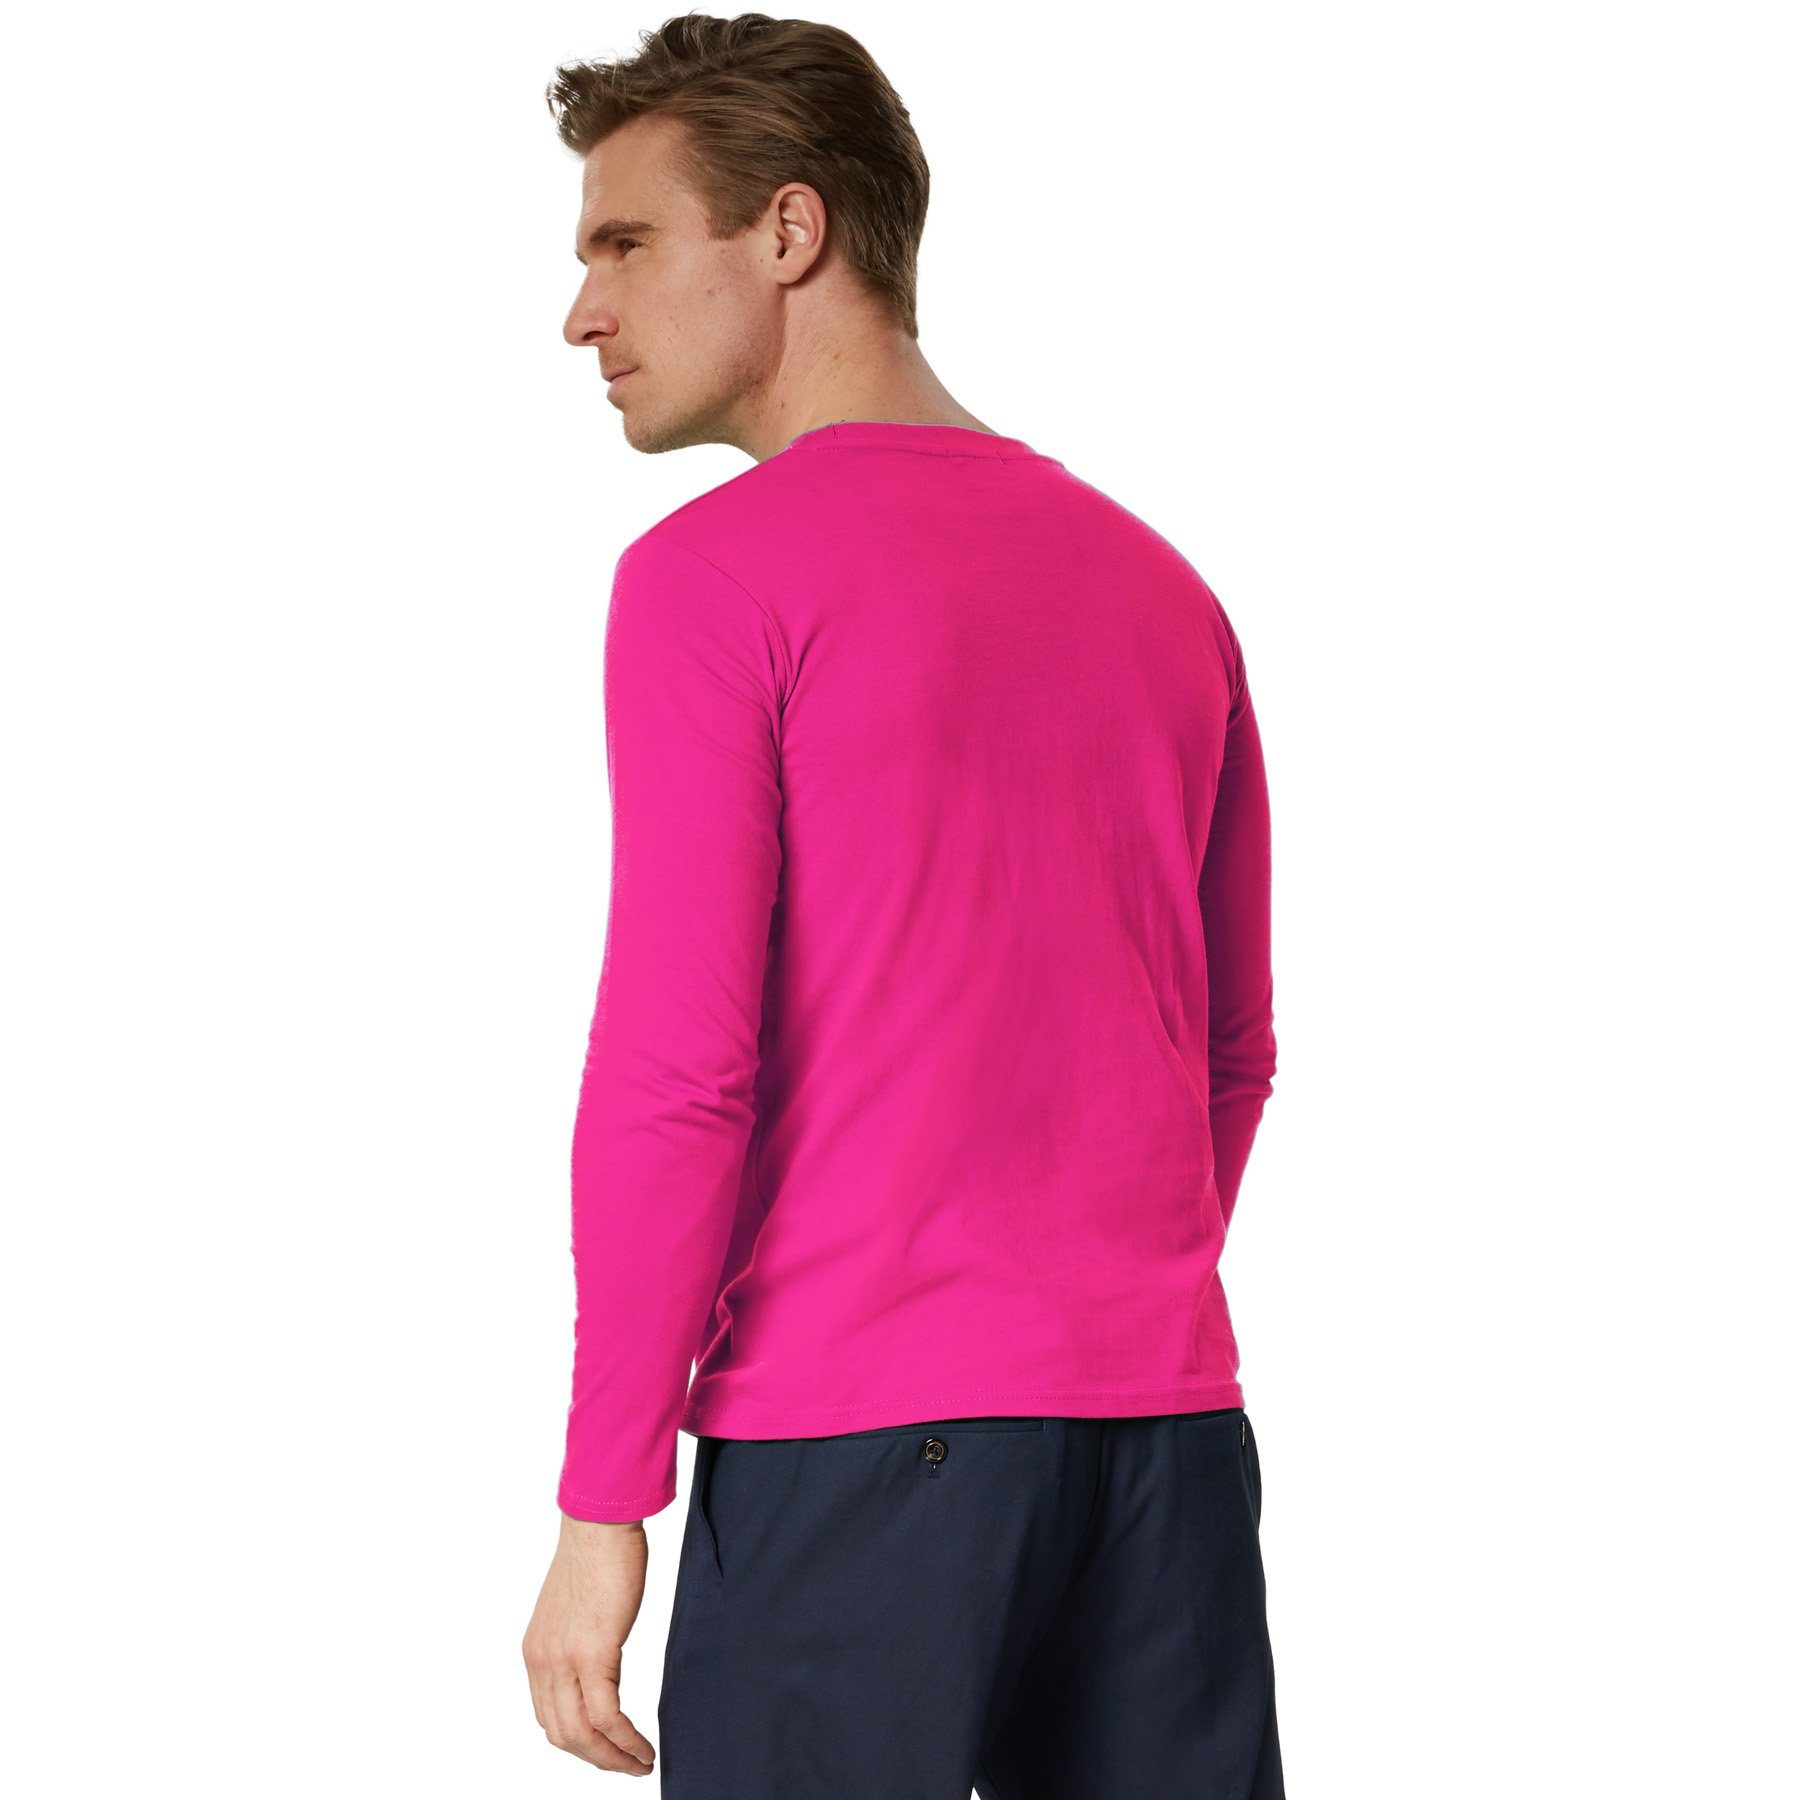 Männer pink dressforfun Longsleeve Langarm-Shirt Rundhals